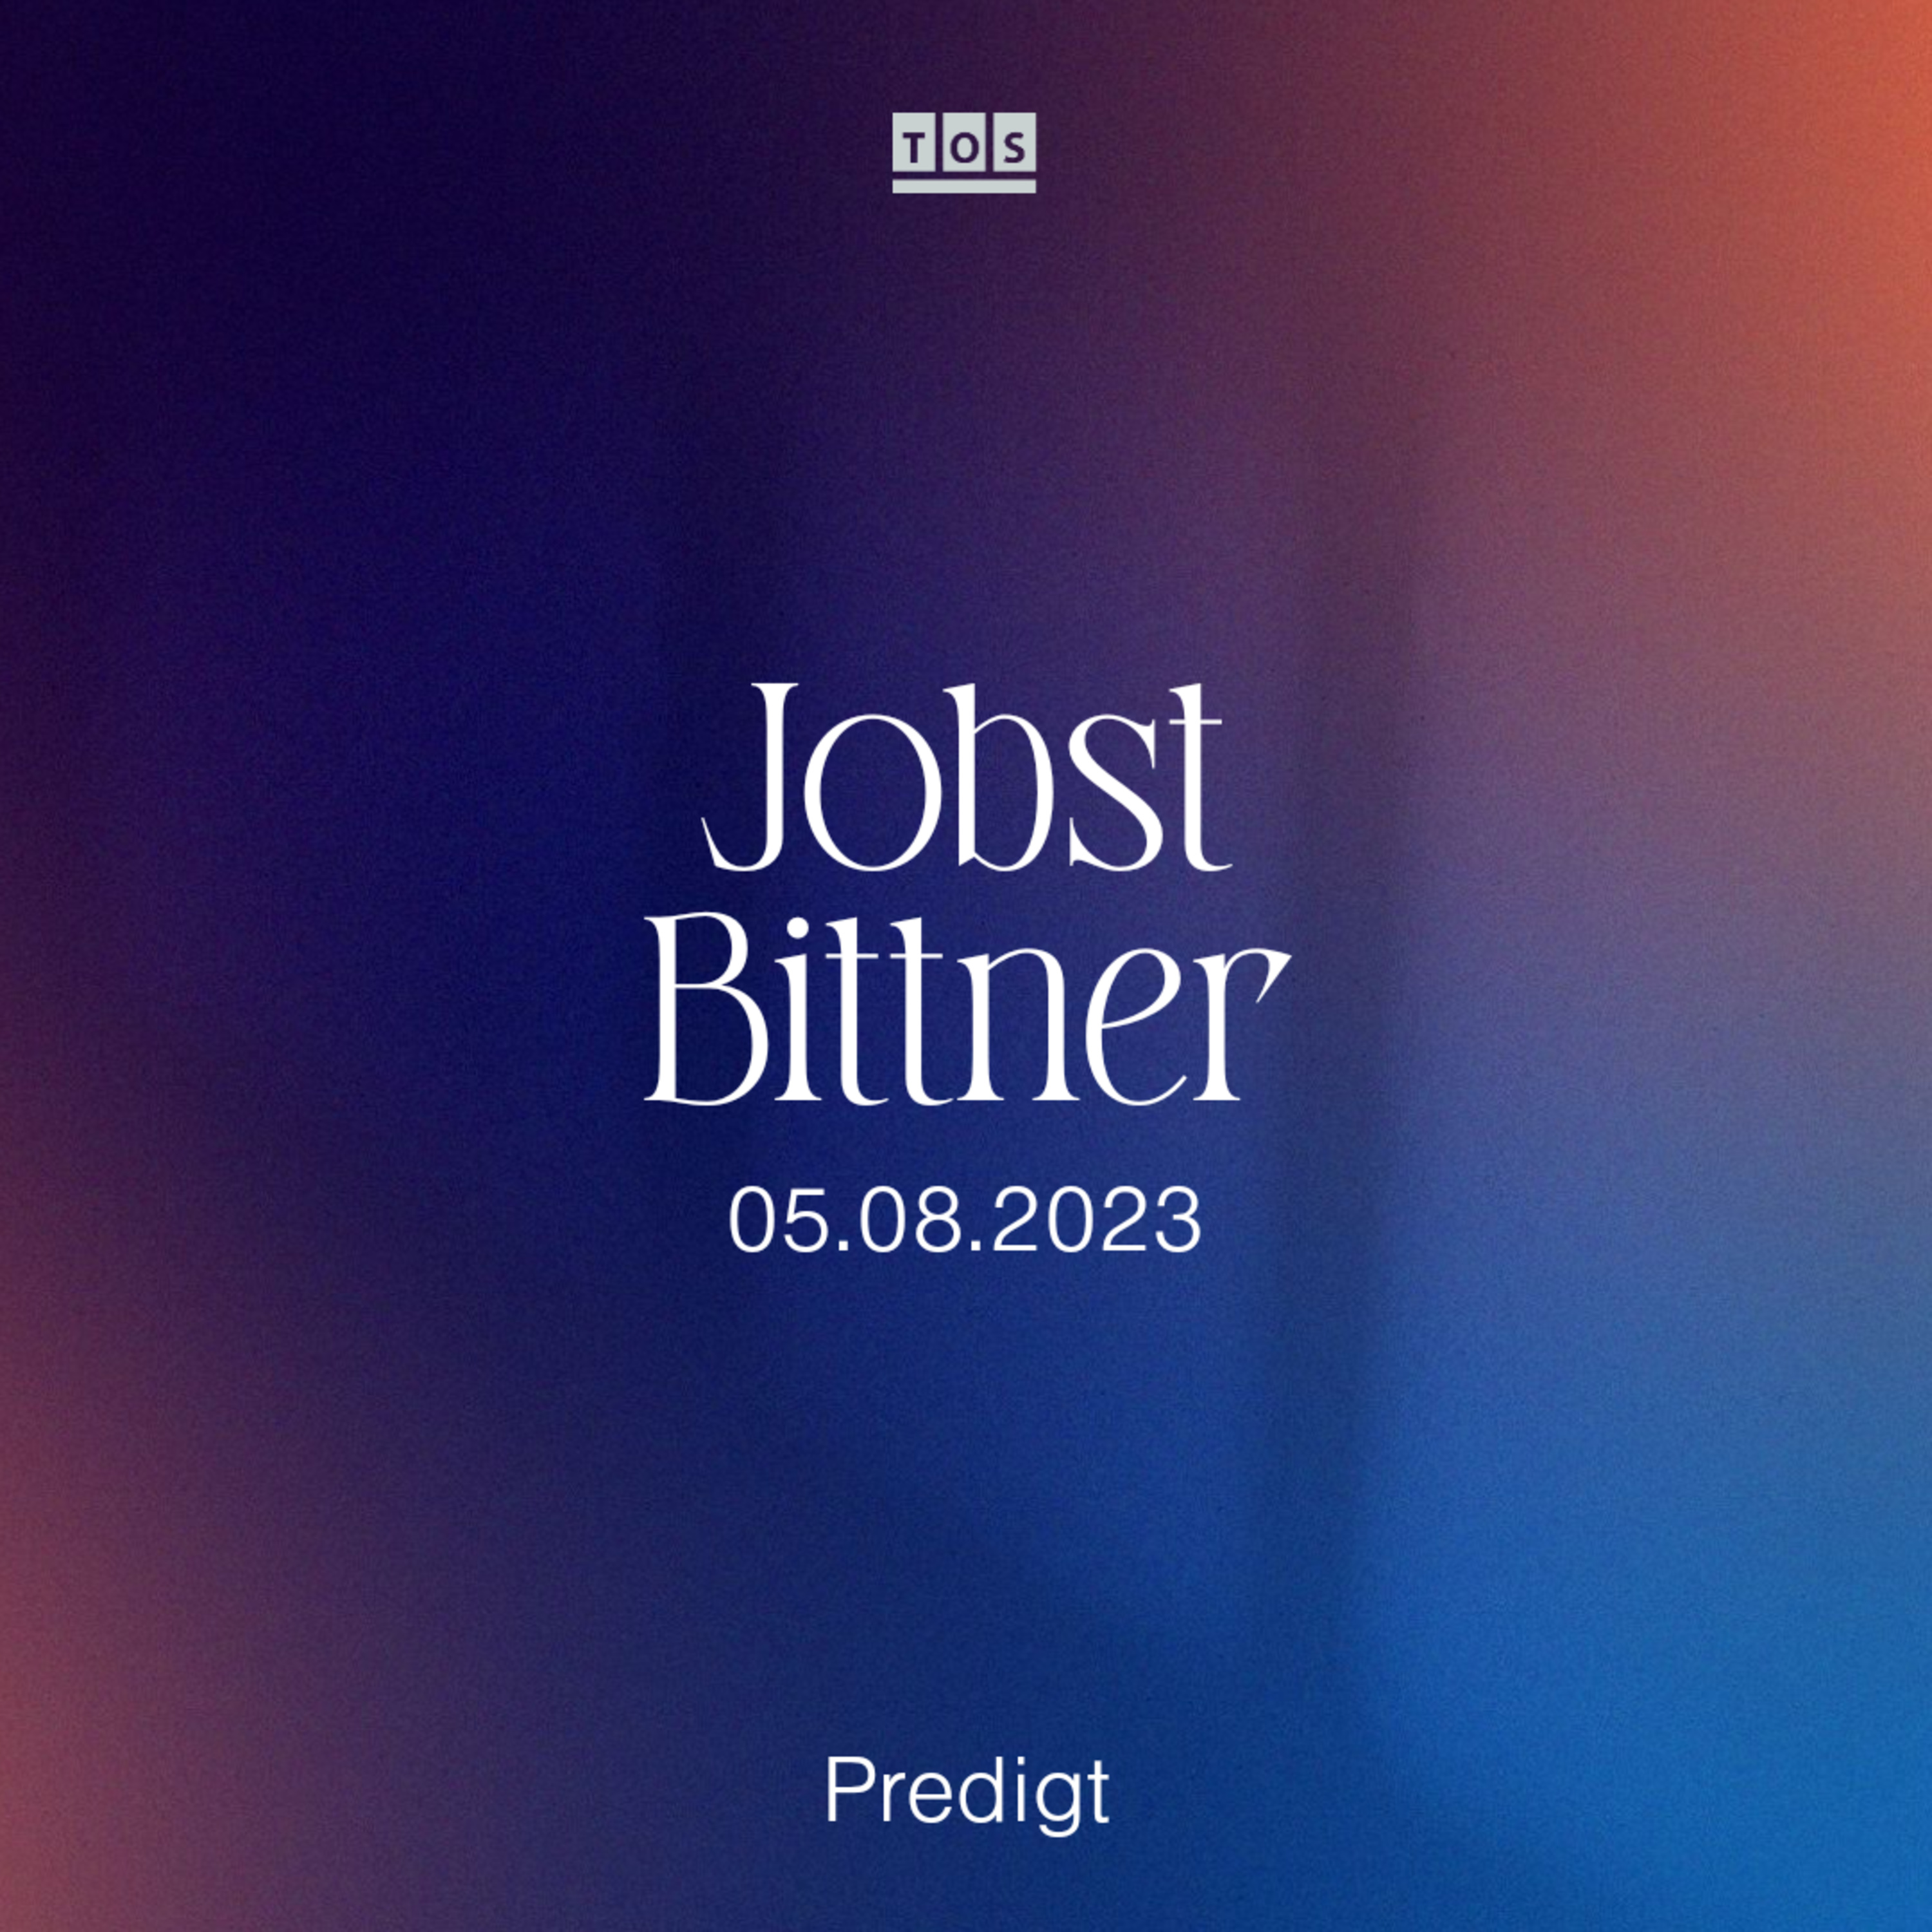 Jobst Bittner - 05.08.2023